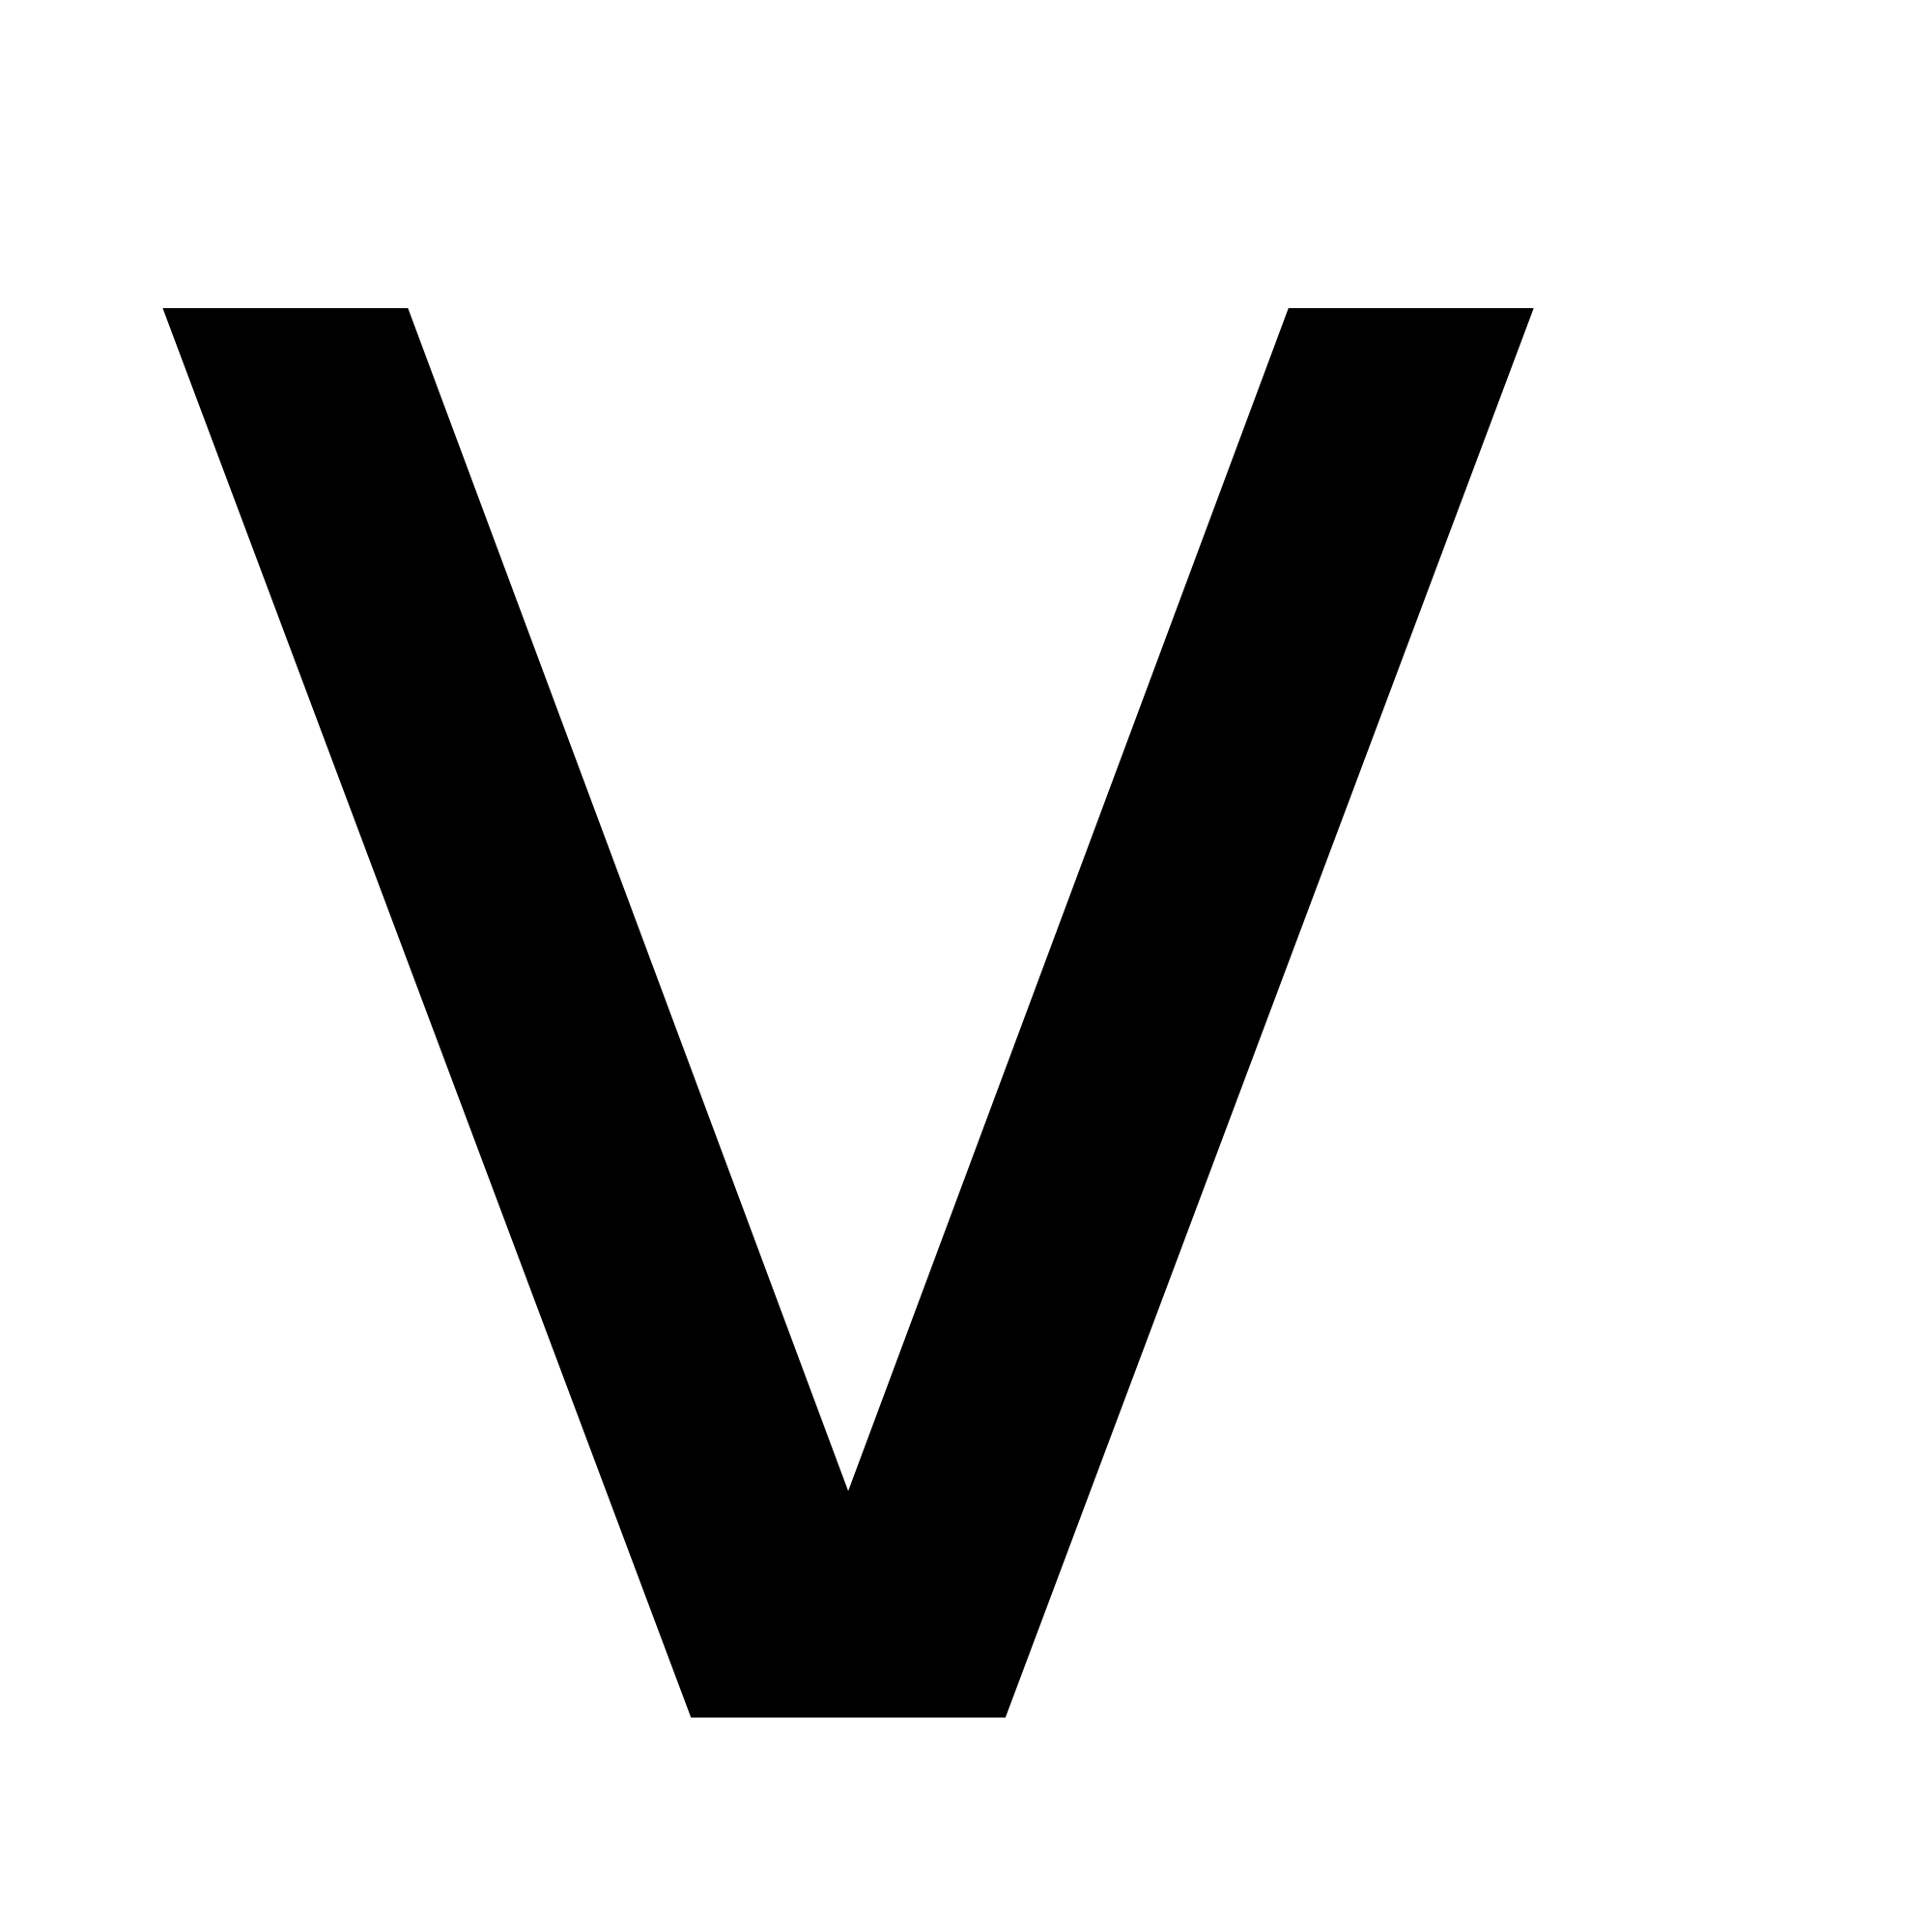 Black Letter V Logo - File:Letter v.svg - Wikimedia Commons